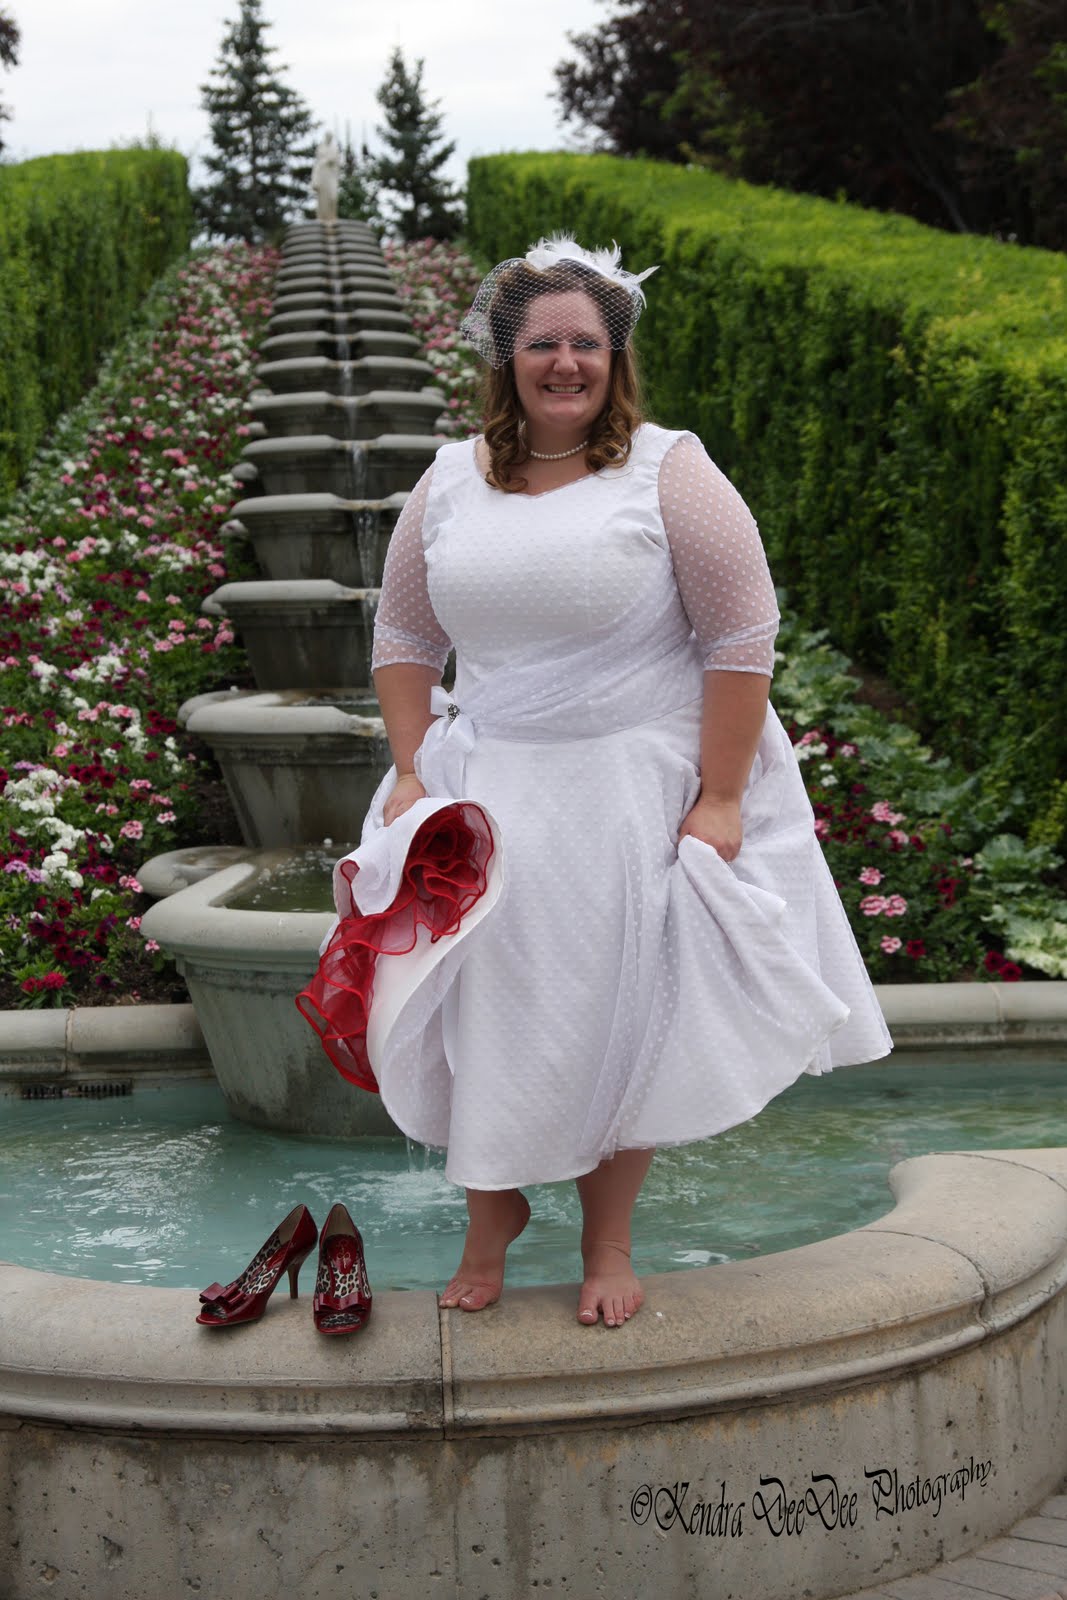 Unforgettable Brides & More: Jessica Edstrom Bridals - July 9, 2011